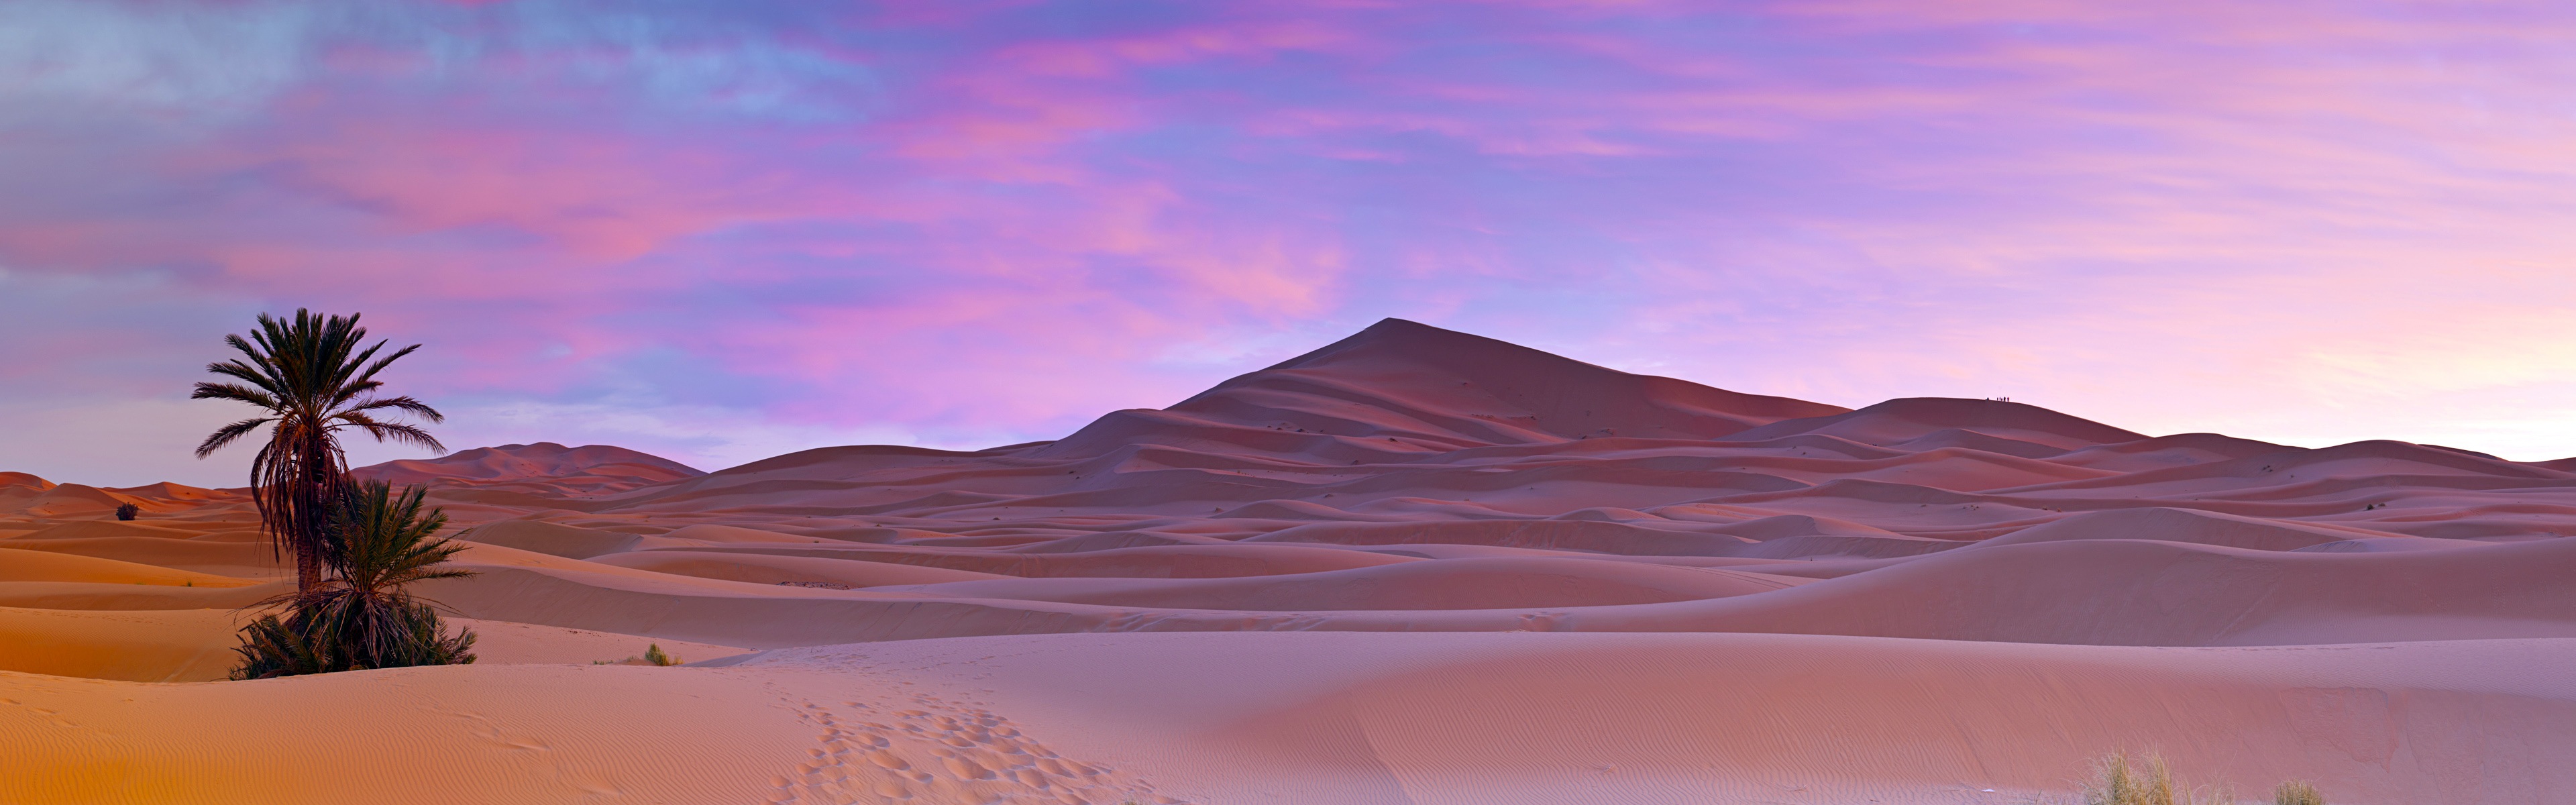 뜨겁고 건조한 사막, 윈도우 8 파노라마 와이드 스크린 배경 화면 #1 - 3840x1200